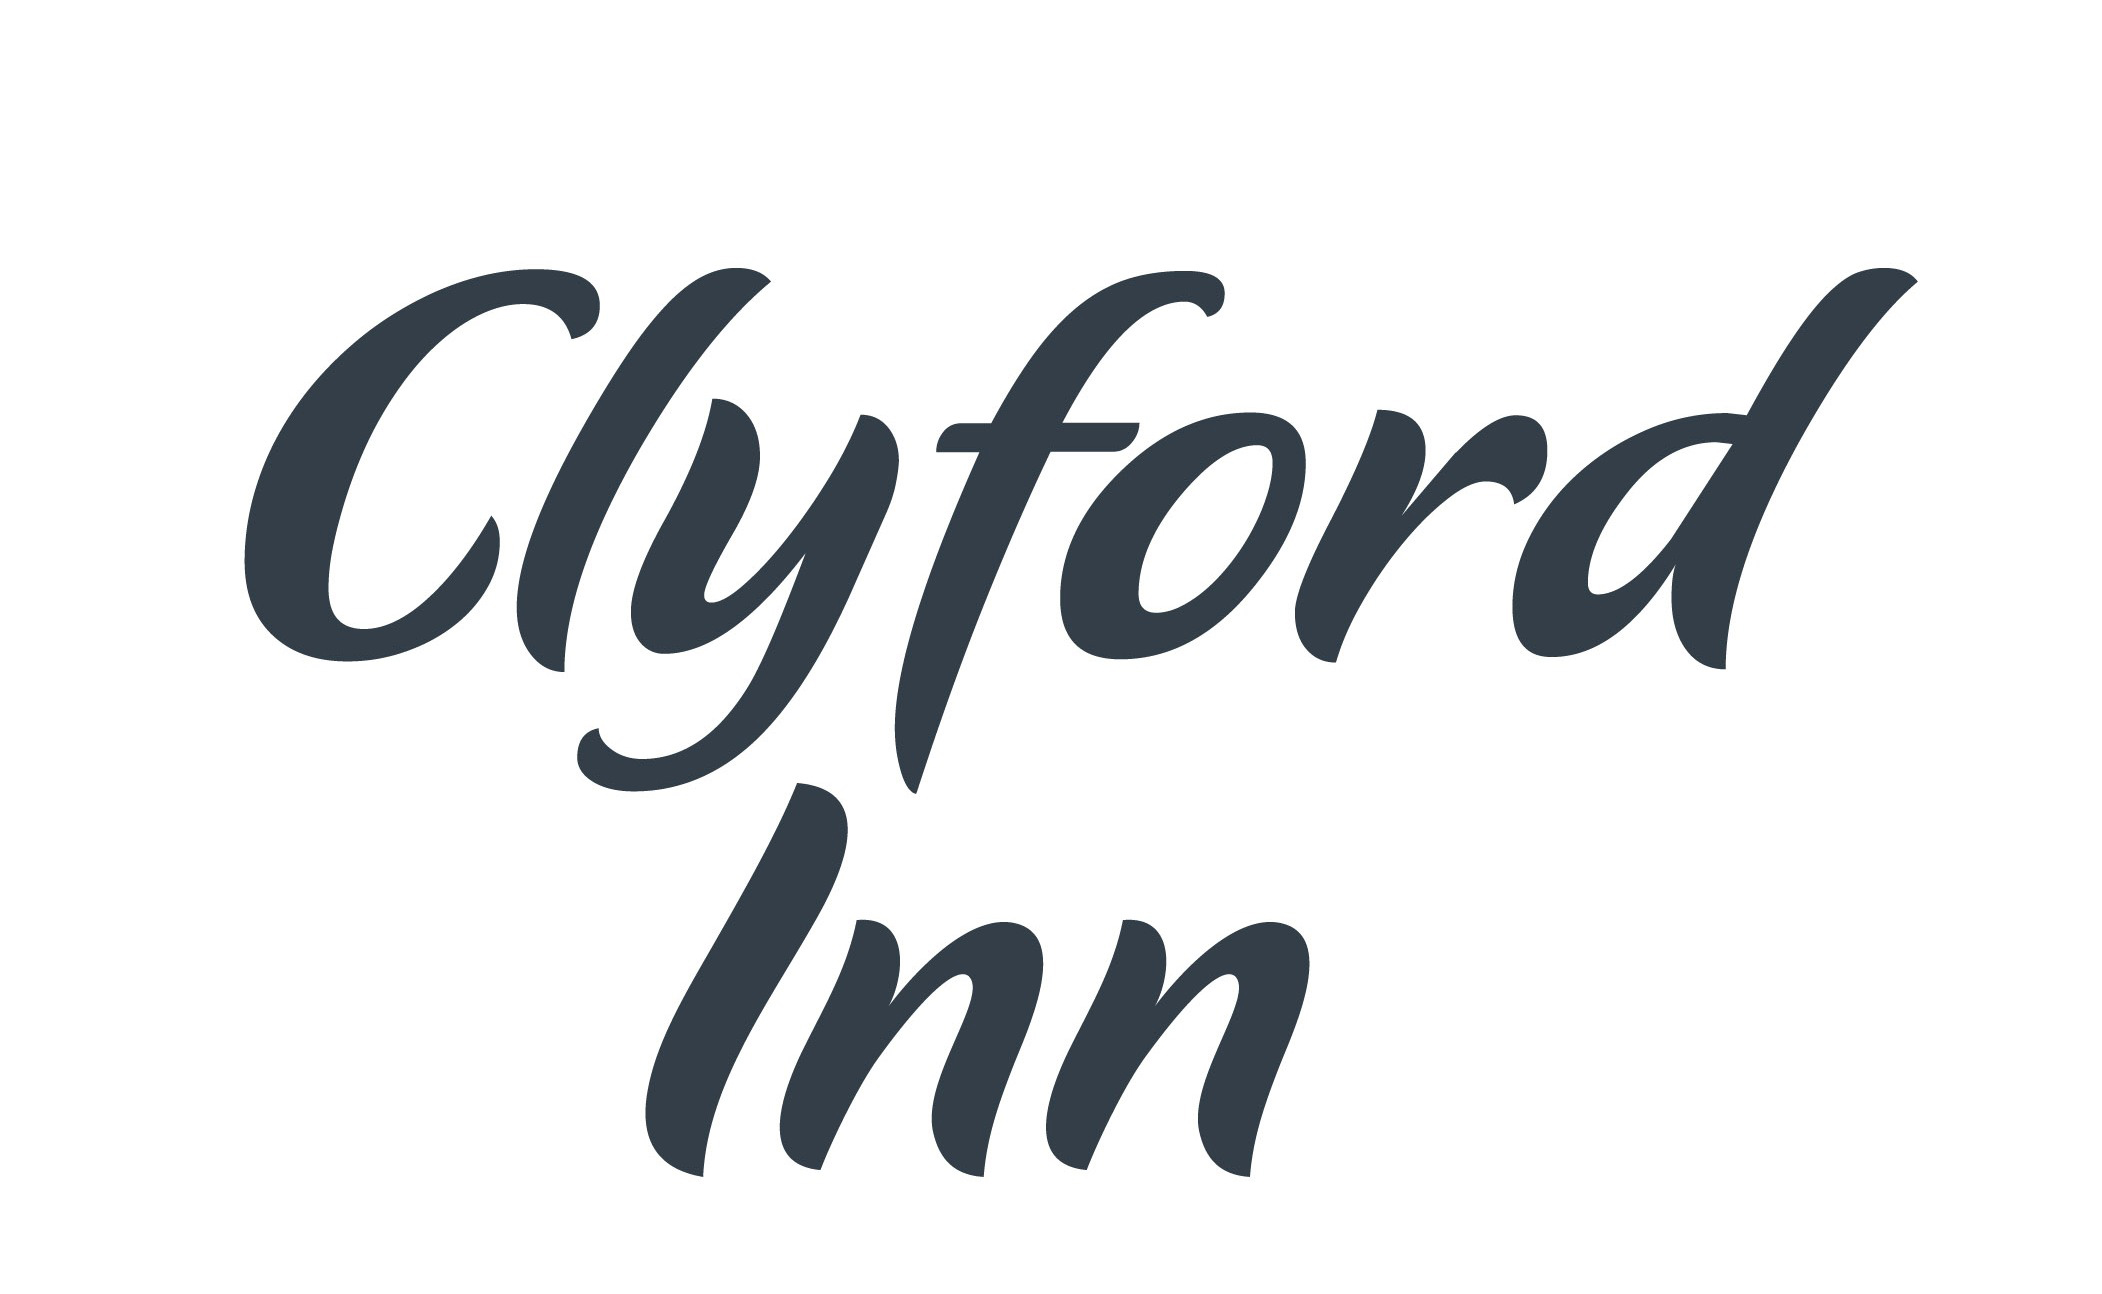 Clyford Inn|Hotel|Accomodation